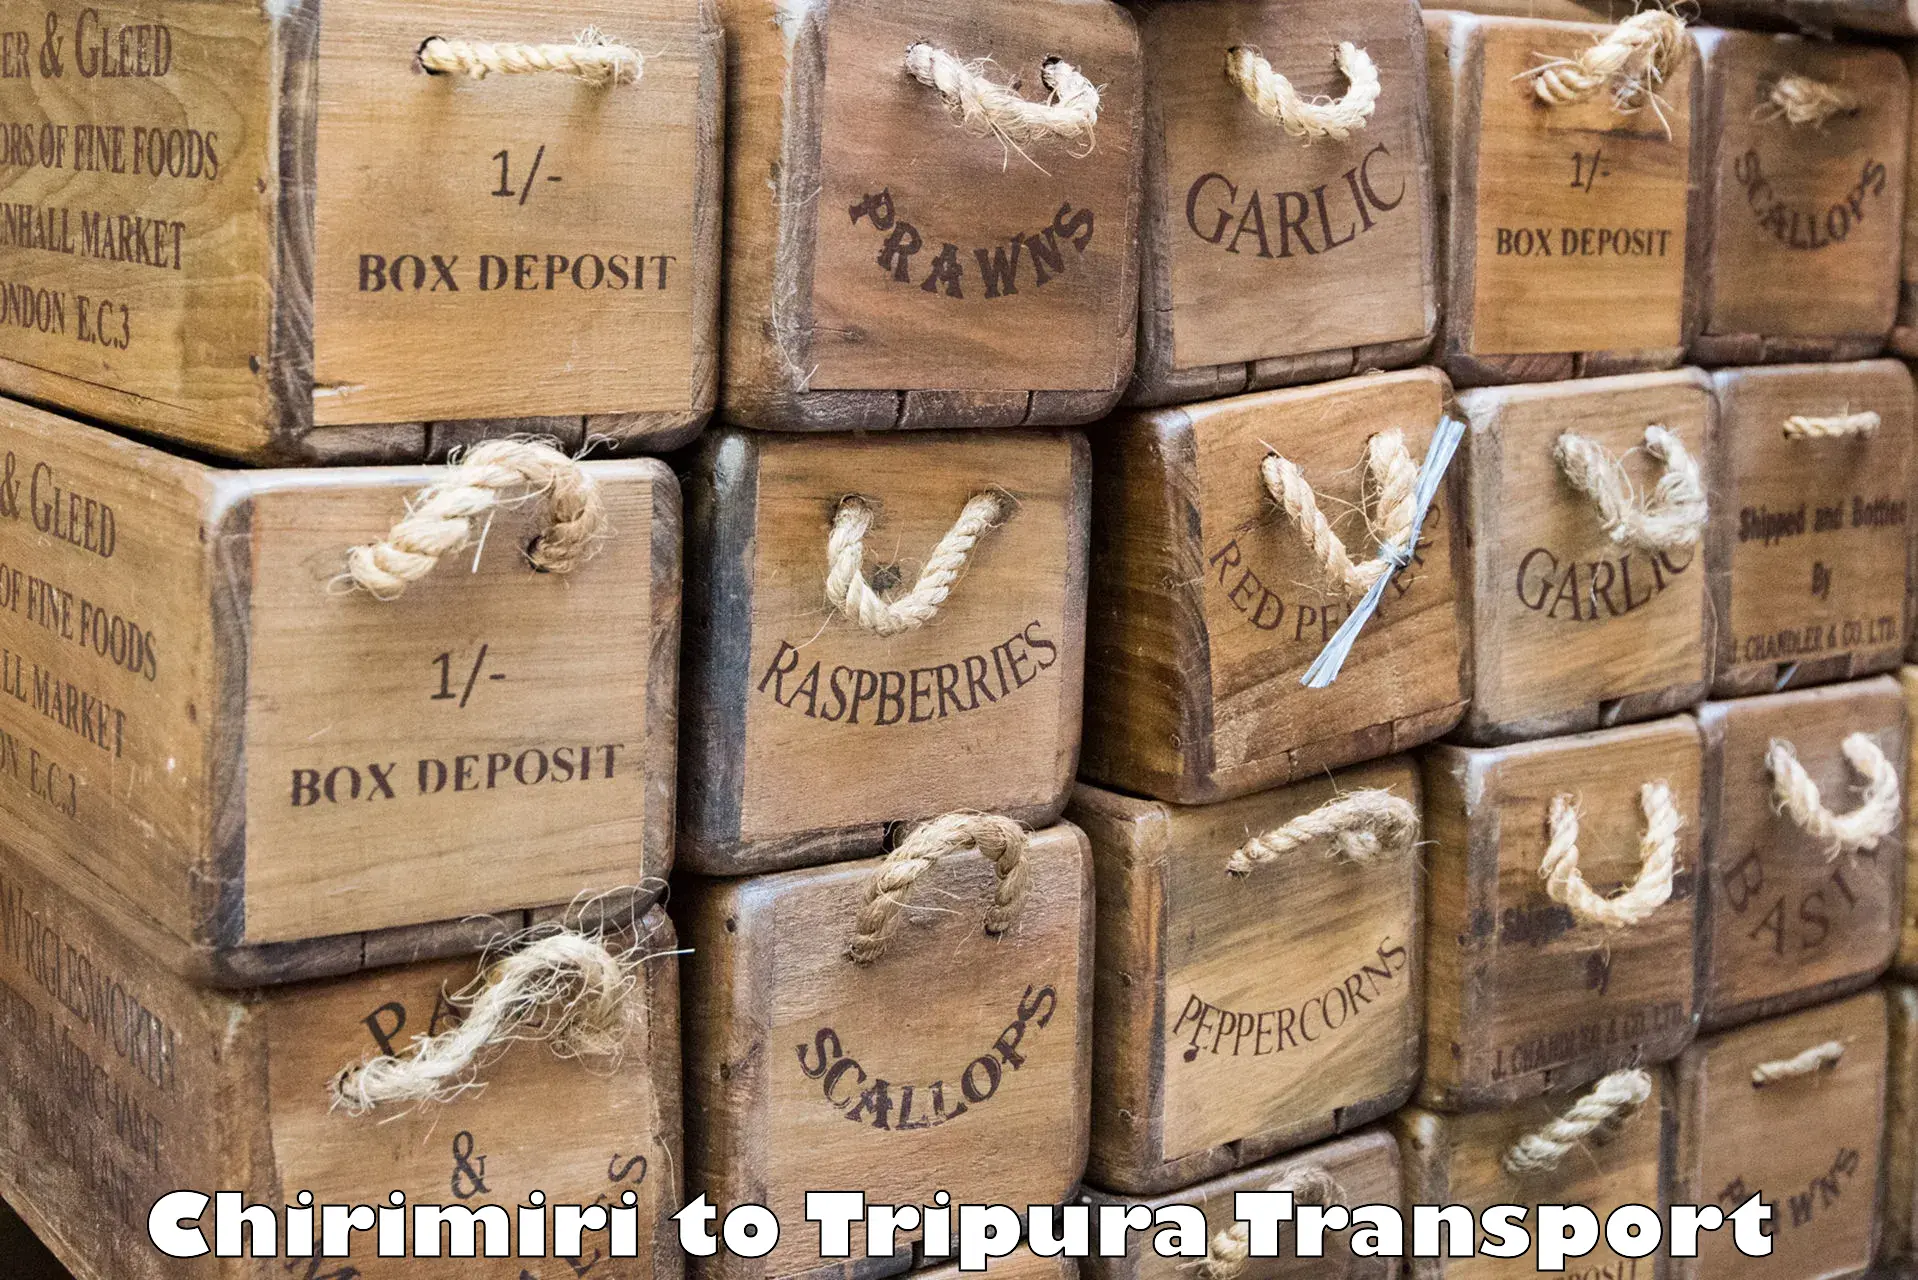 Container transport service Chirimiri to Udaipur Tripura